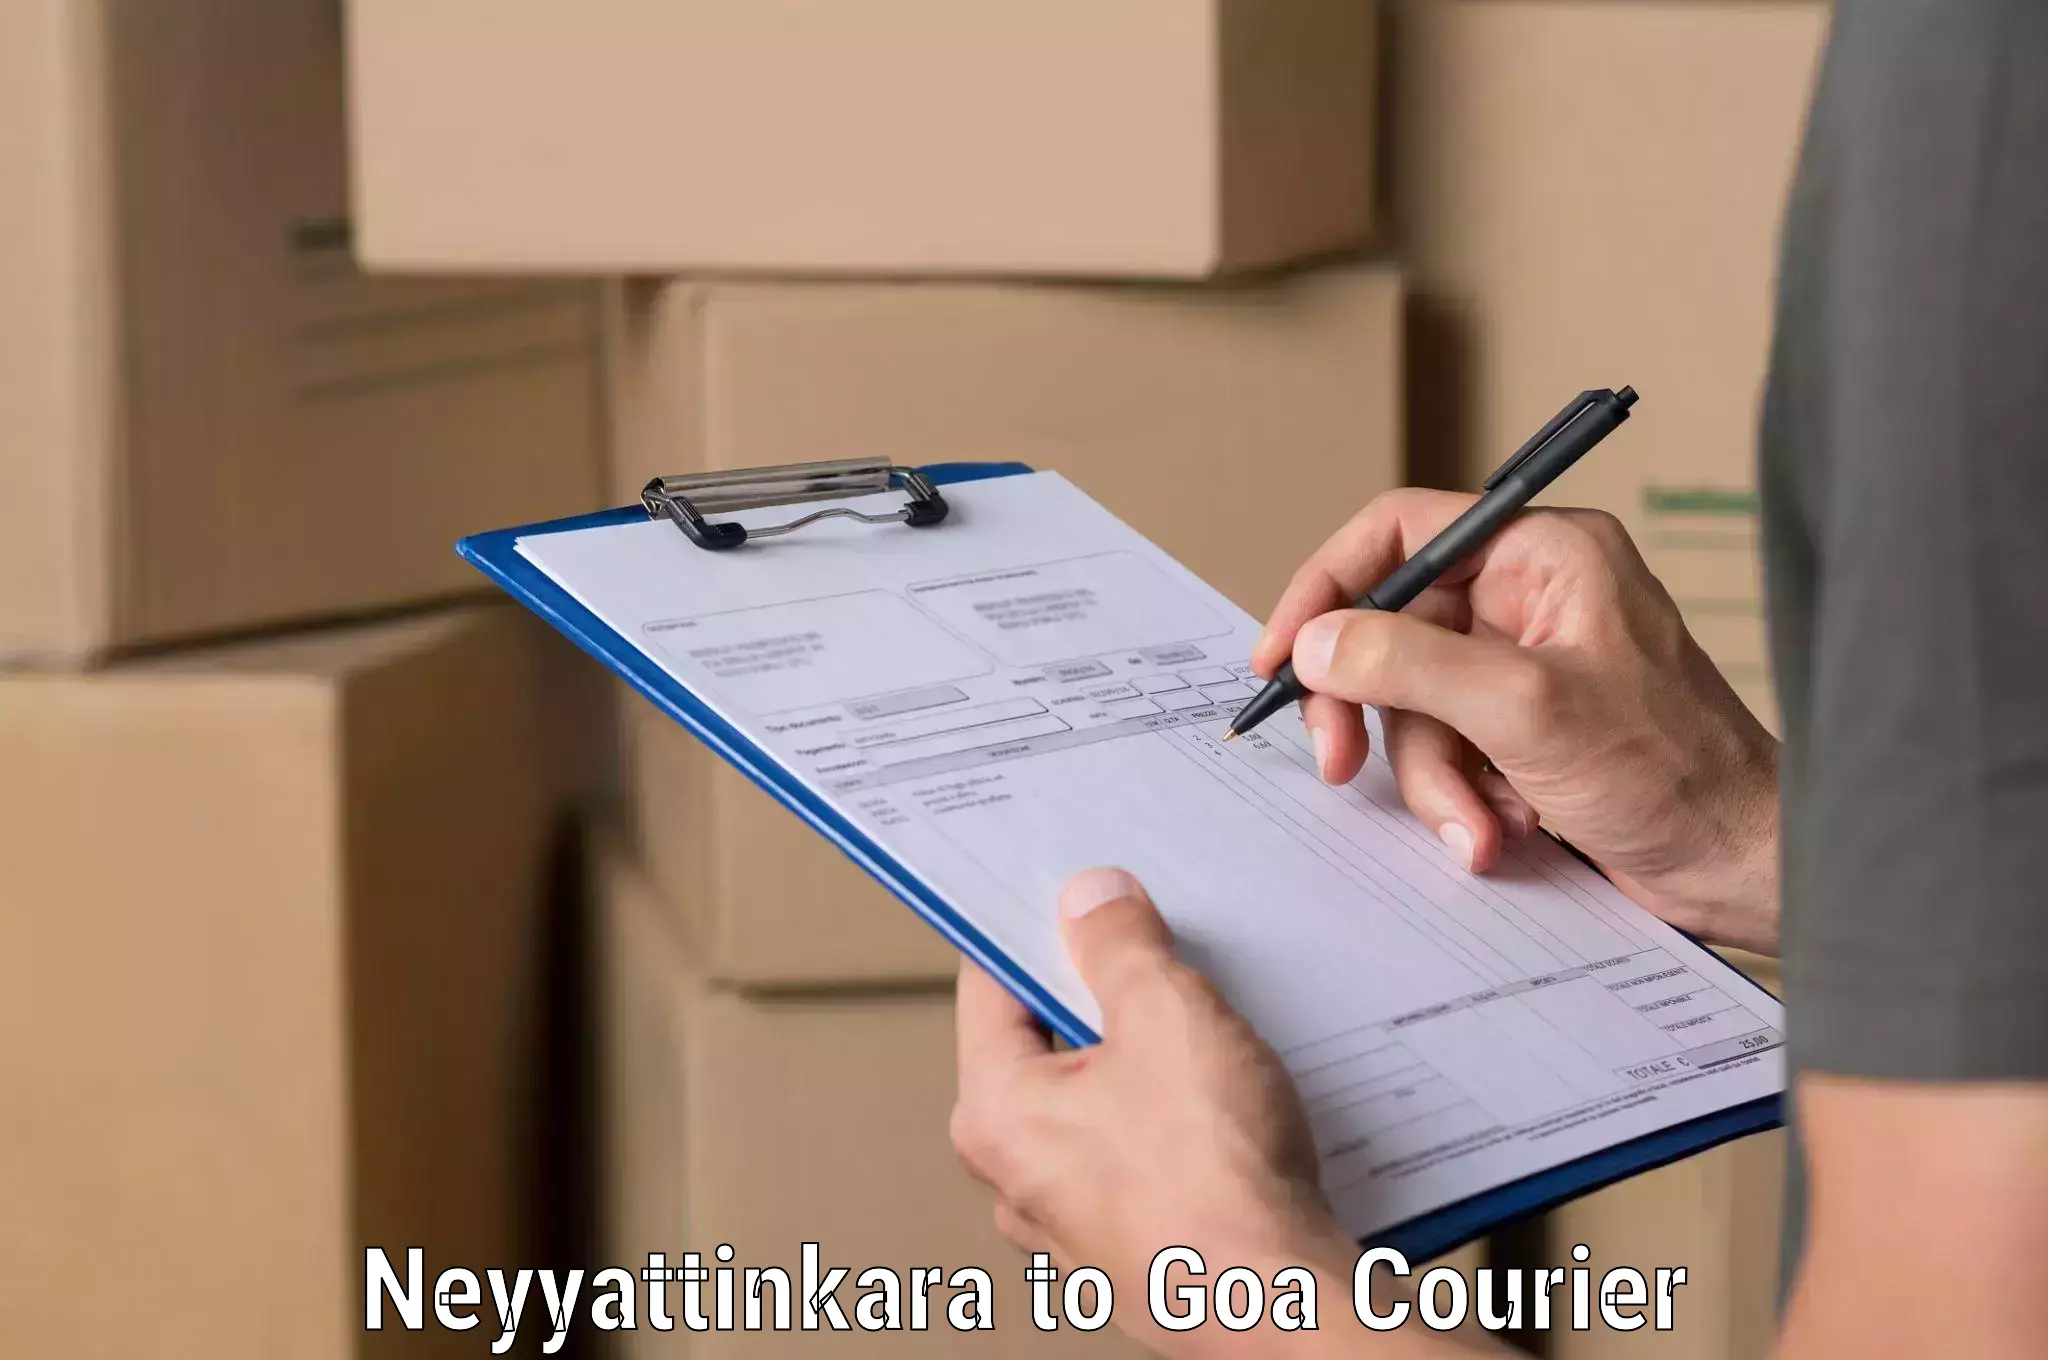 Optimized shipping routes Neyyattinkara to Goa